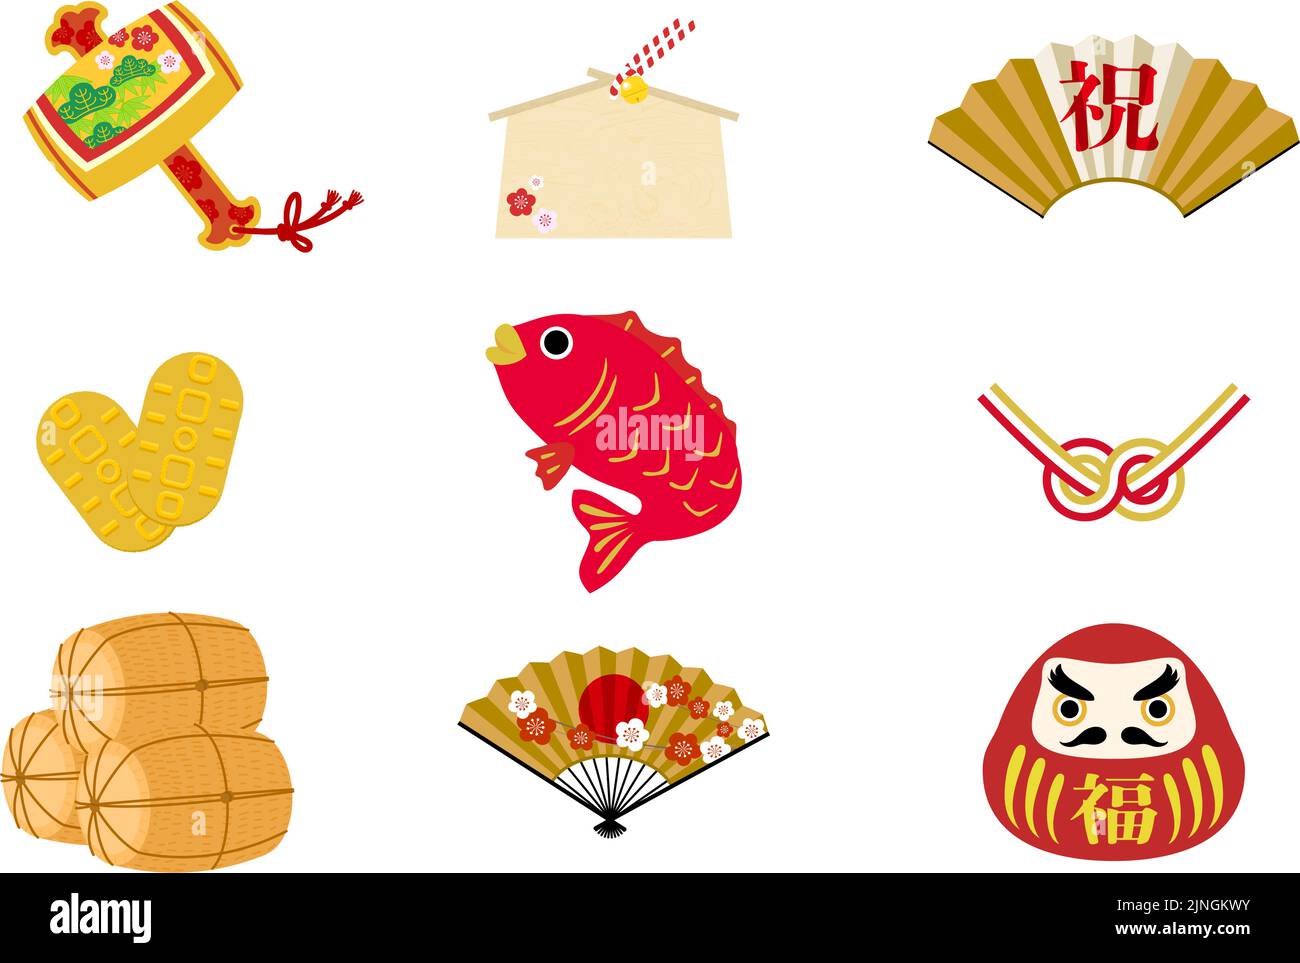 Neujahrsdekoration: Vektor-Illustration von Icon-Set wie gehämmerter Gavel und Seebrasse japanisches Design - Übersetzung: Glück, feiern Stock Vektor